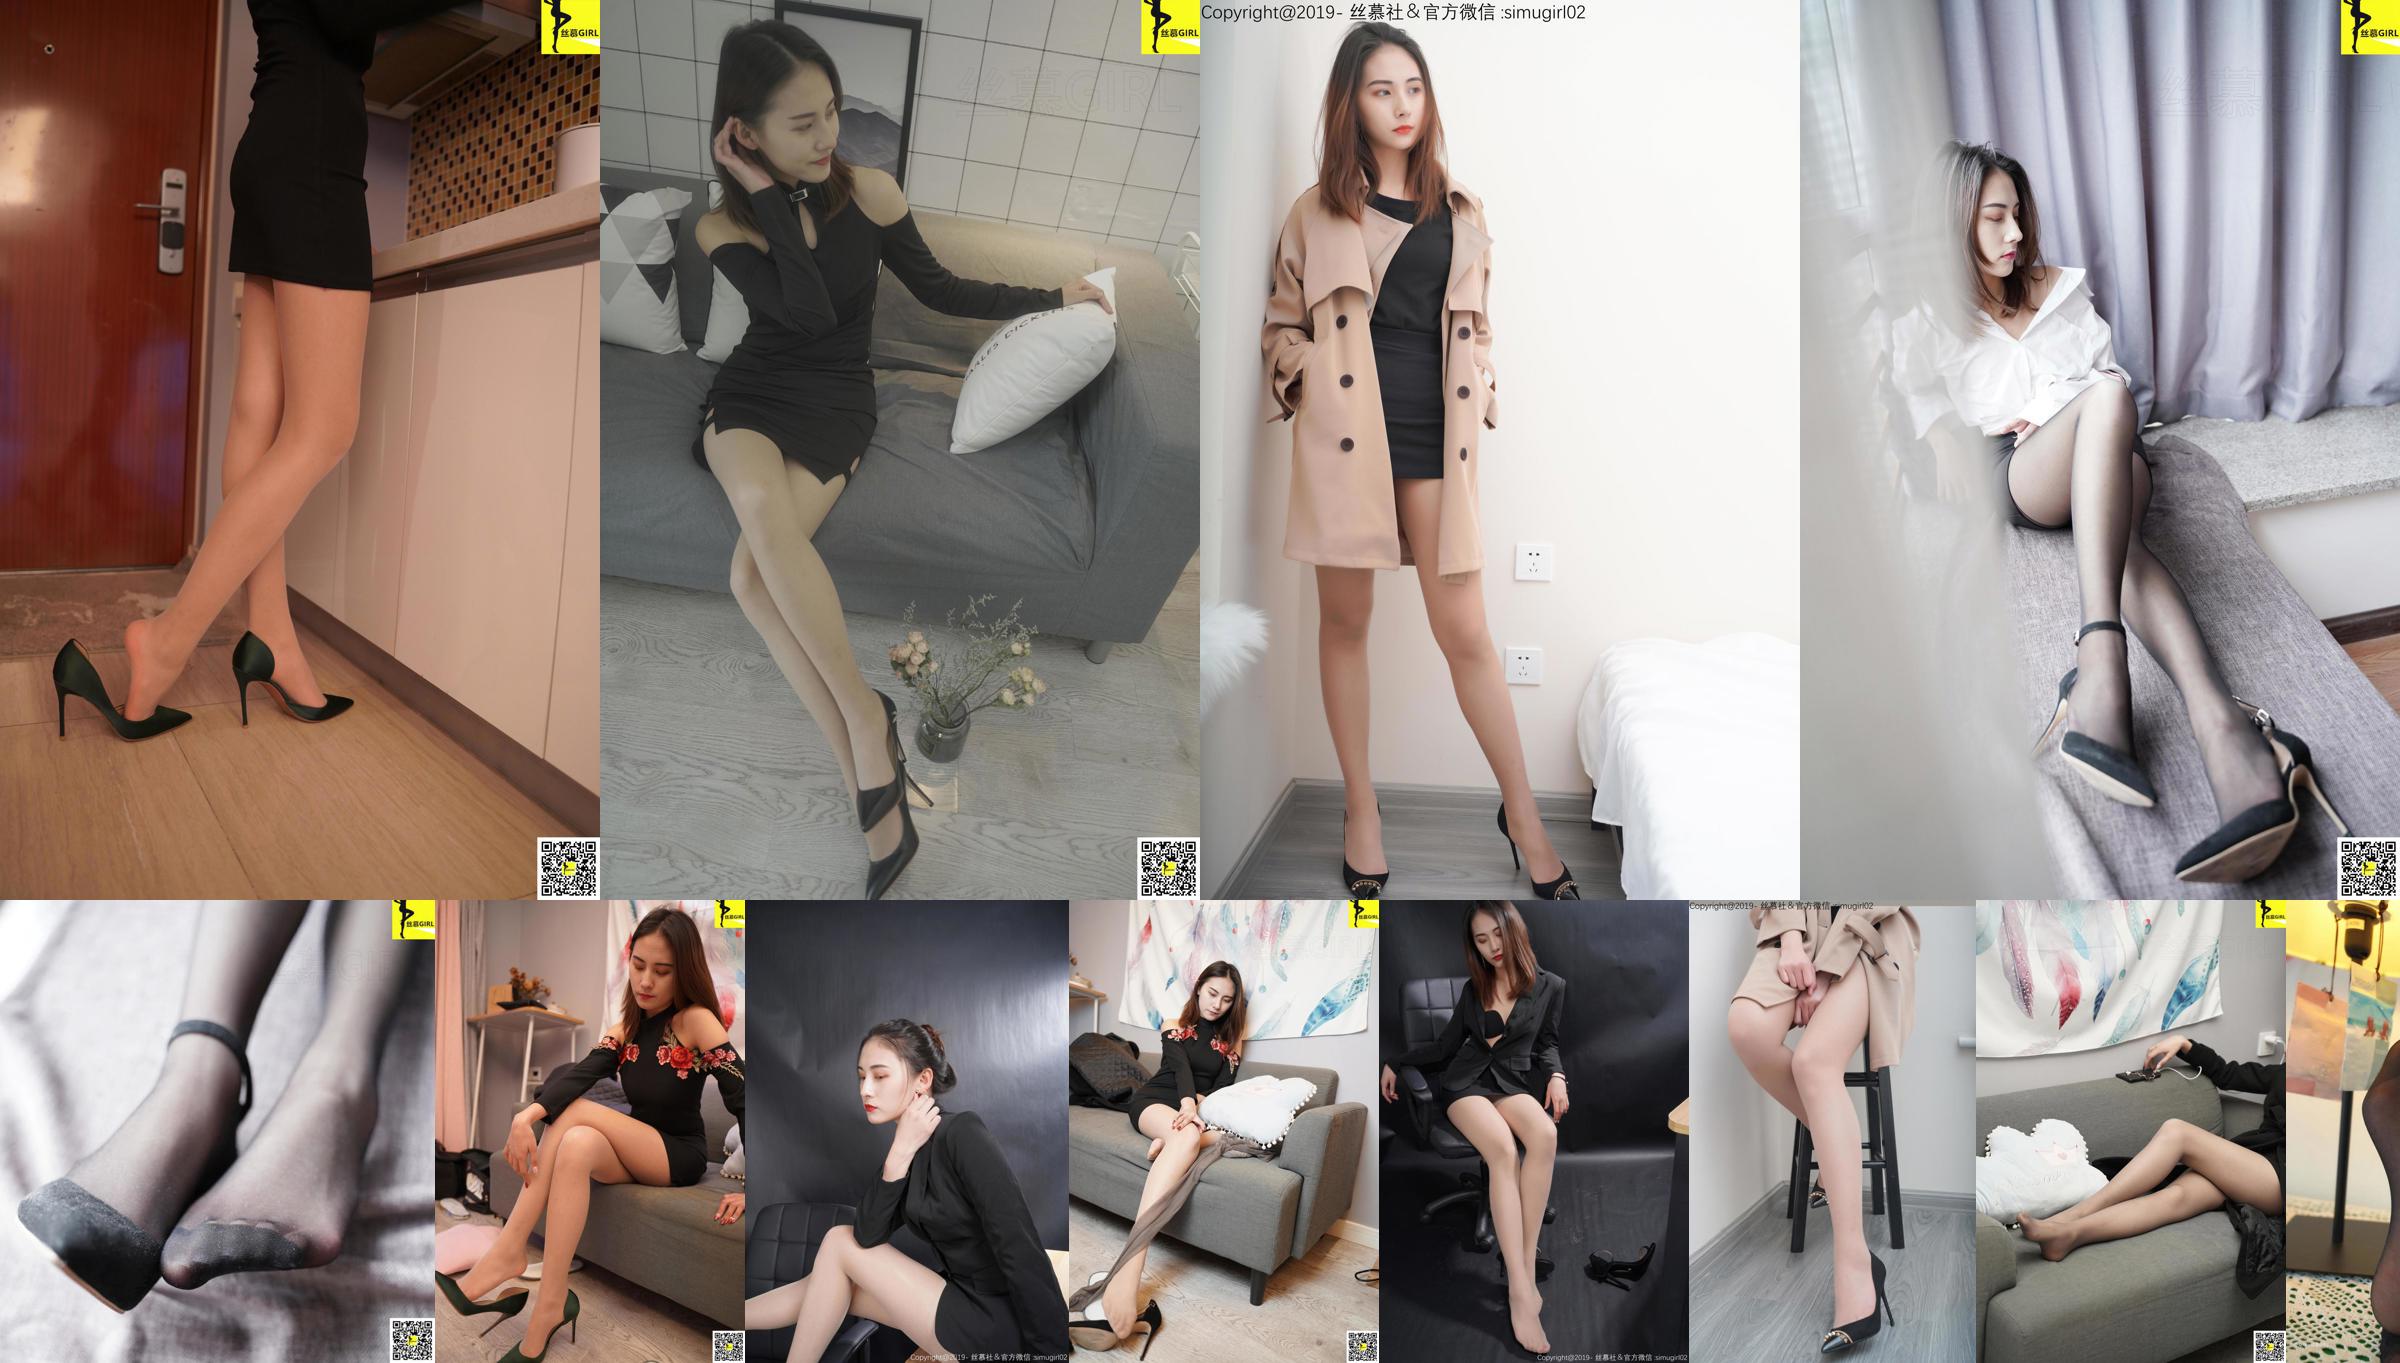 [Simu] SM006 Tingyi "Nữ Boss có đôi chân xinh đẹp" No.77e89e Trang 2